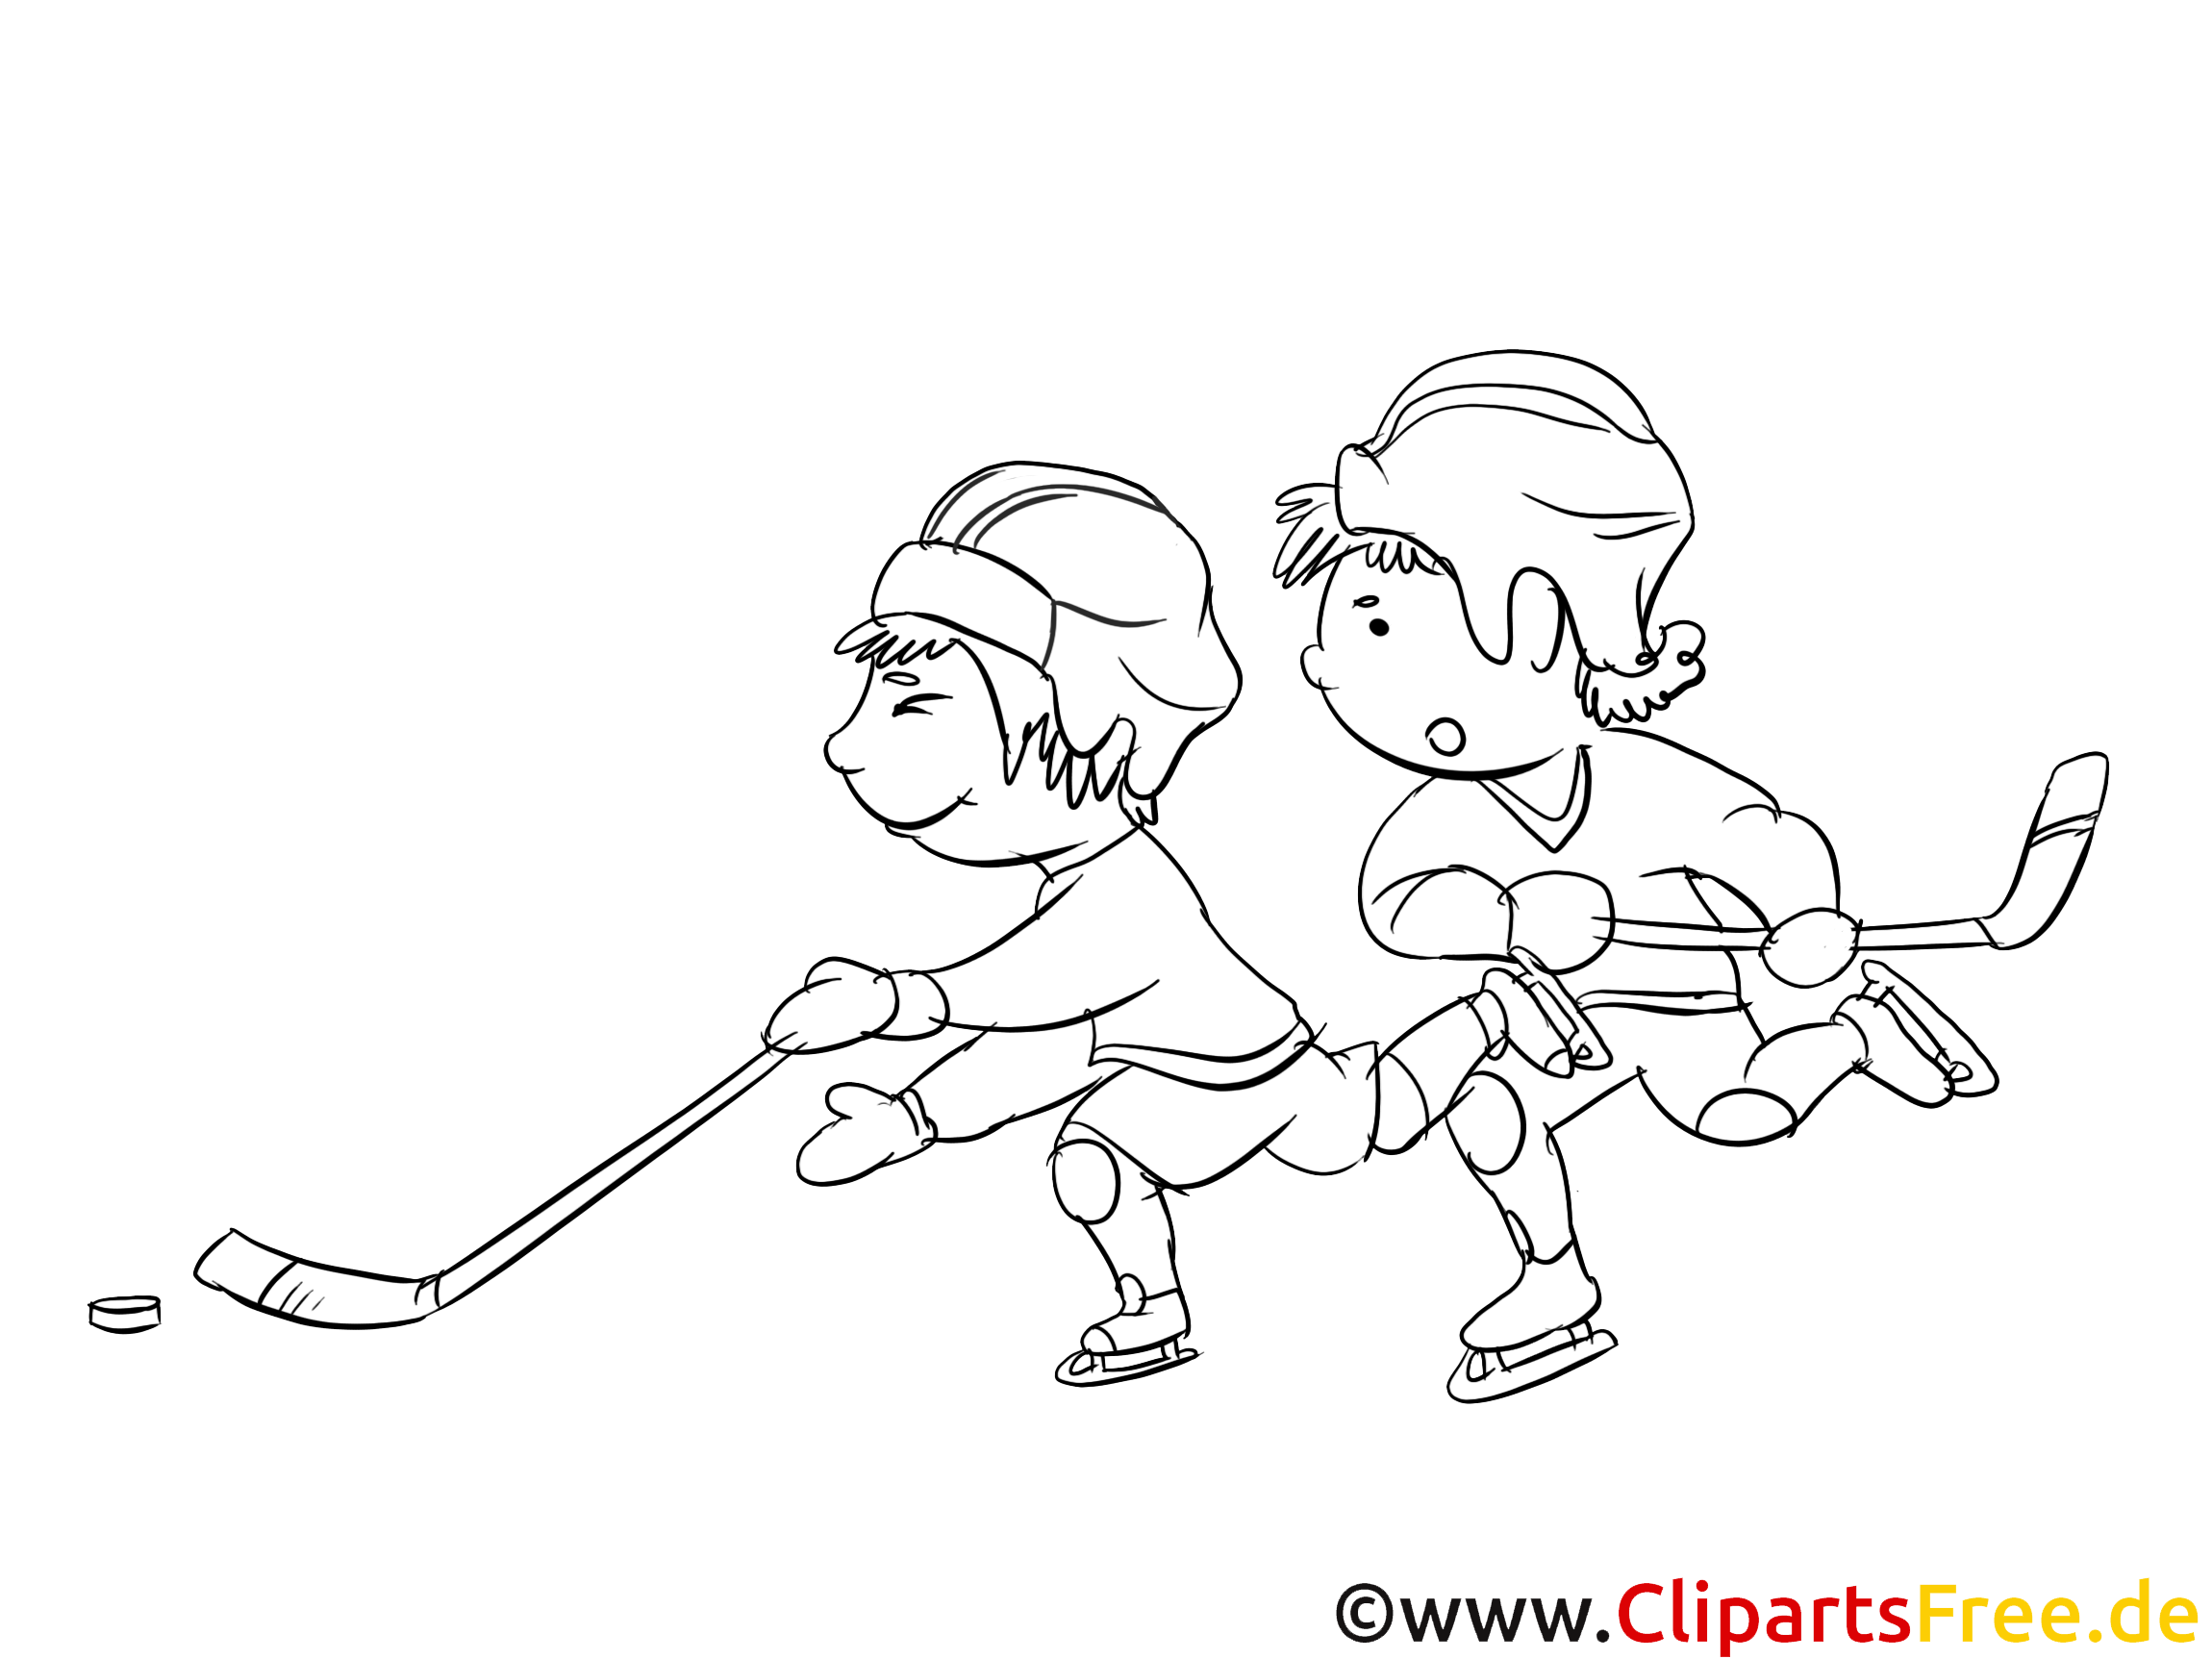 Joueurs dessin gratuit – Hockey à colorier